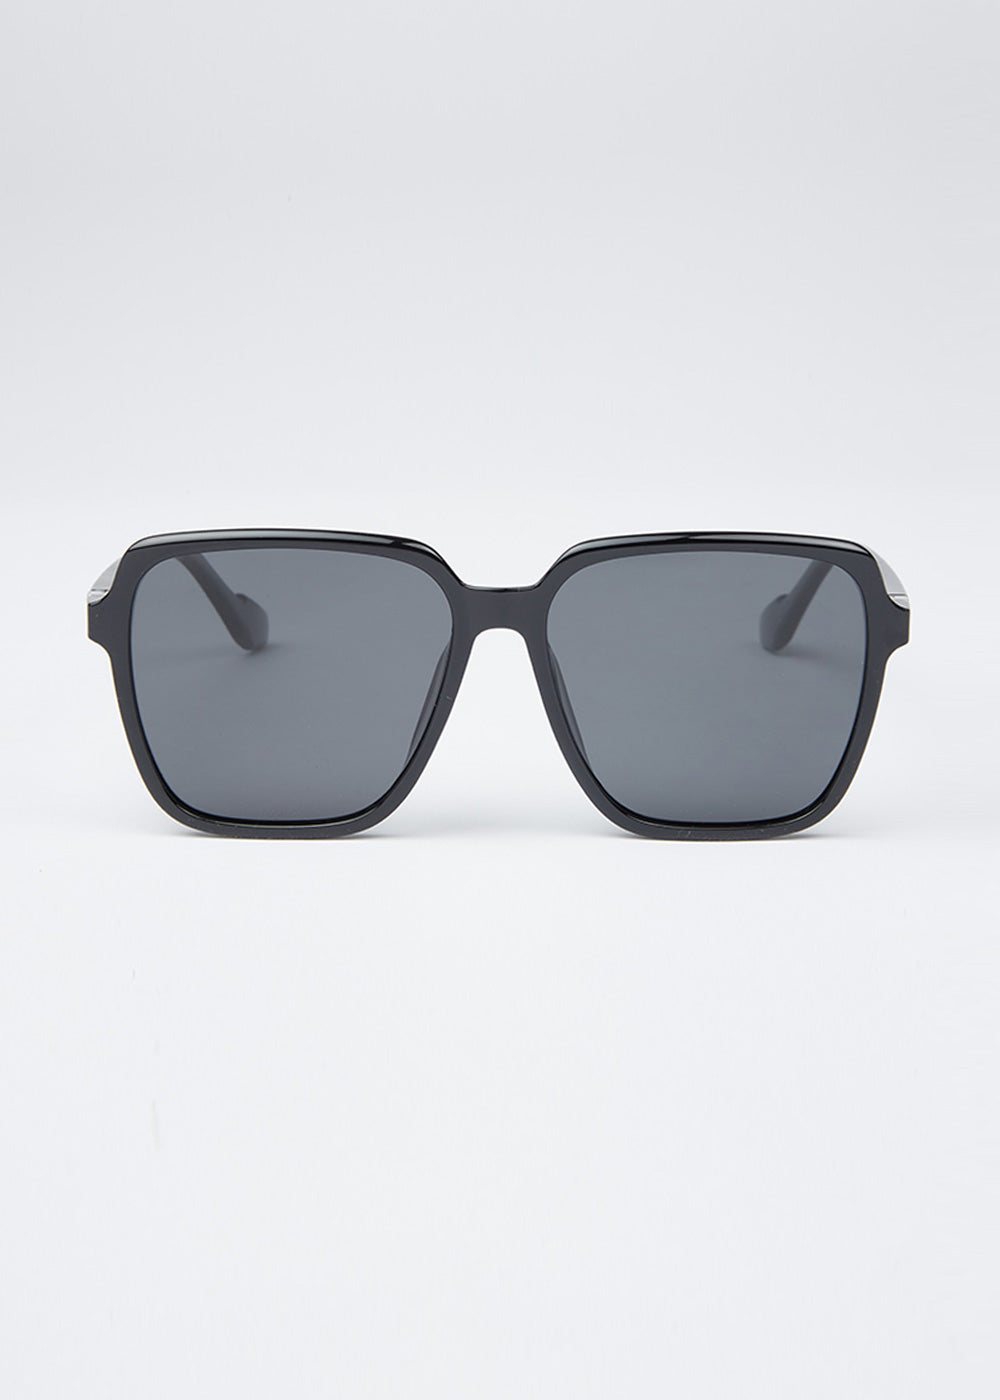 Classic Black Unisex Square Sunglasses